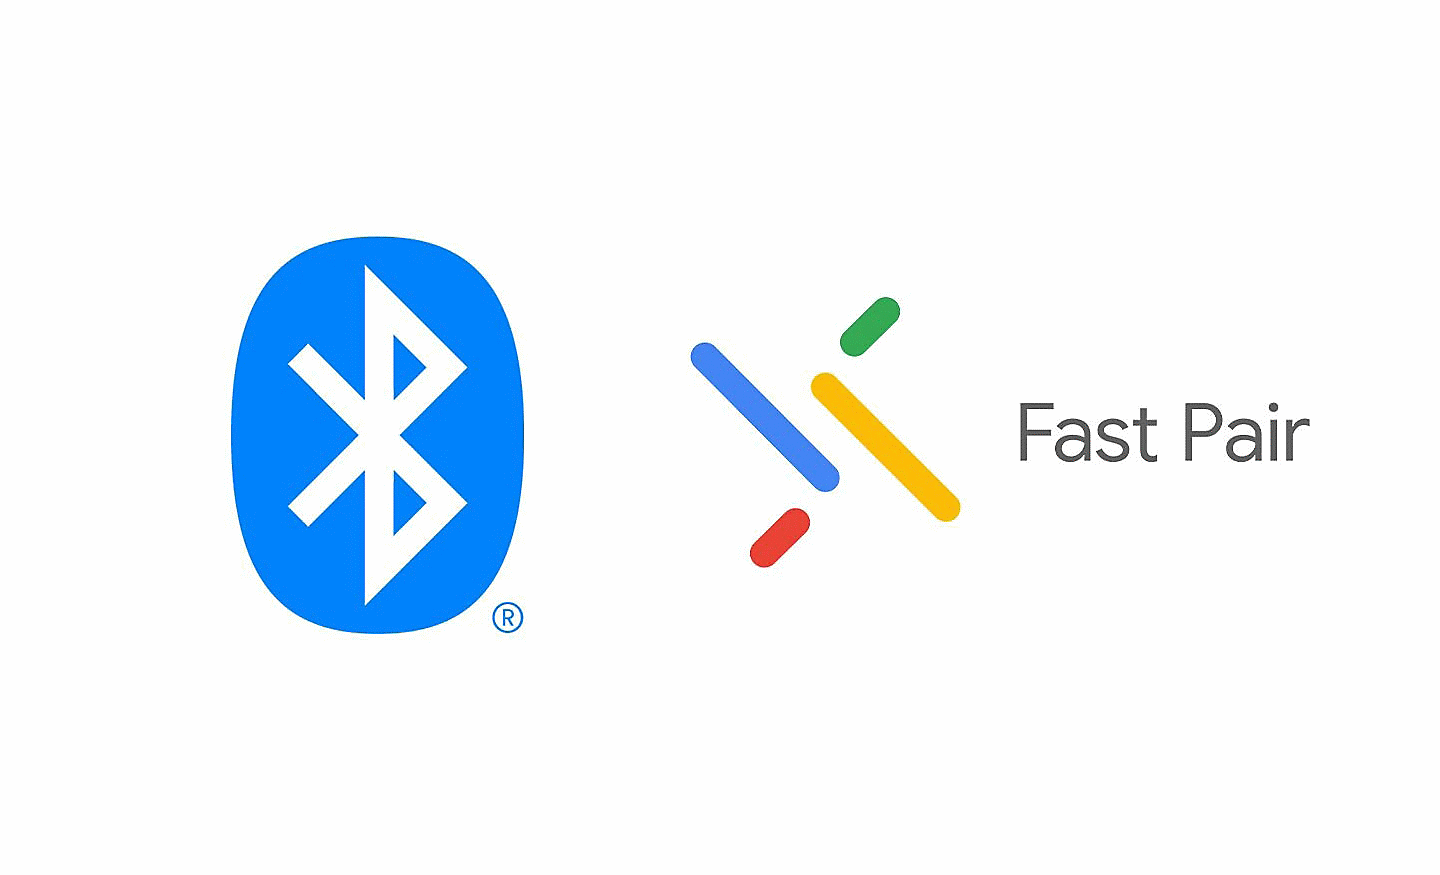 Gambar logo Bluetooth berwarna biru di sebelah logo Google Fast Pair